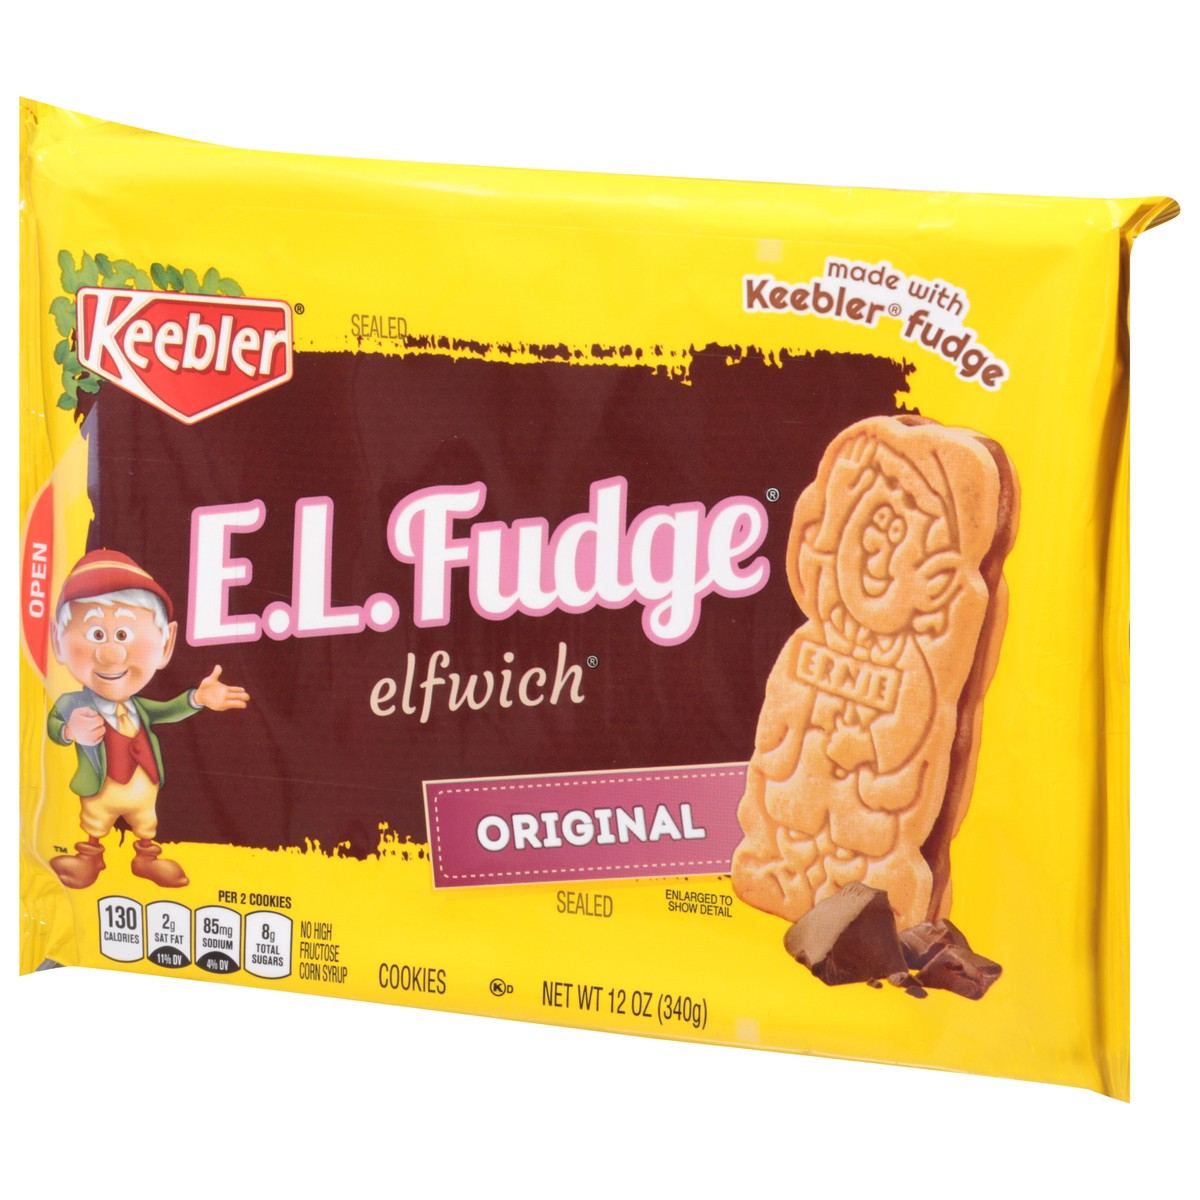 slide 7 of 11, Keebler E.L.Fudge Elfwich Cookies, Original, 13.6 oz